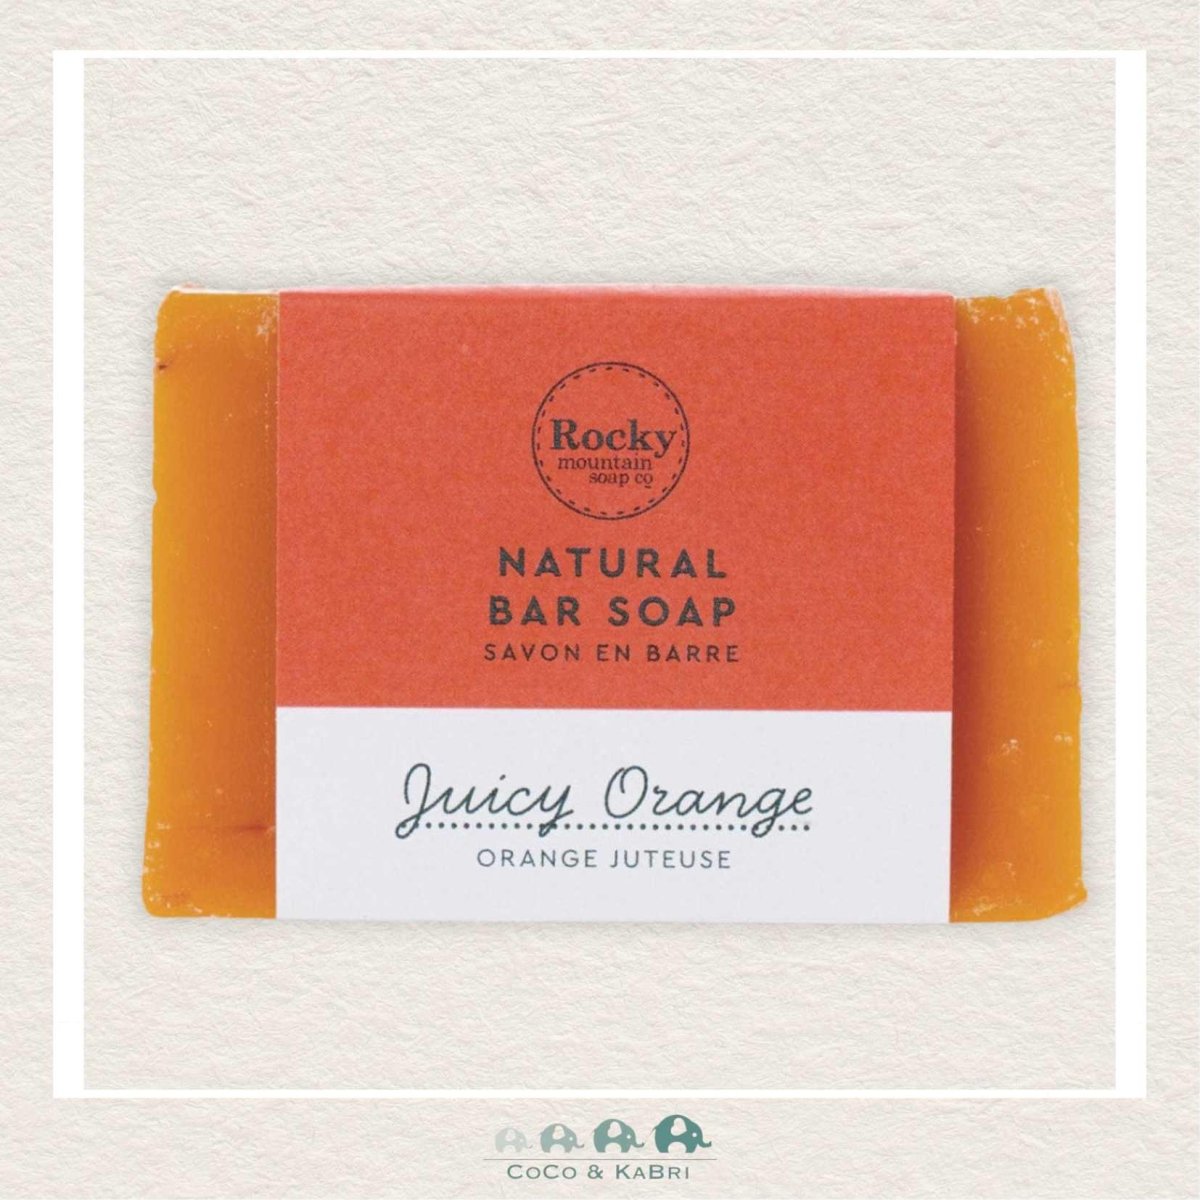 Rocky Mountain Soap Co: Juicy Orange